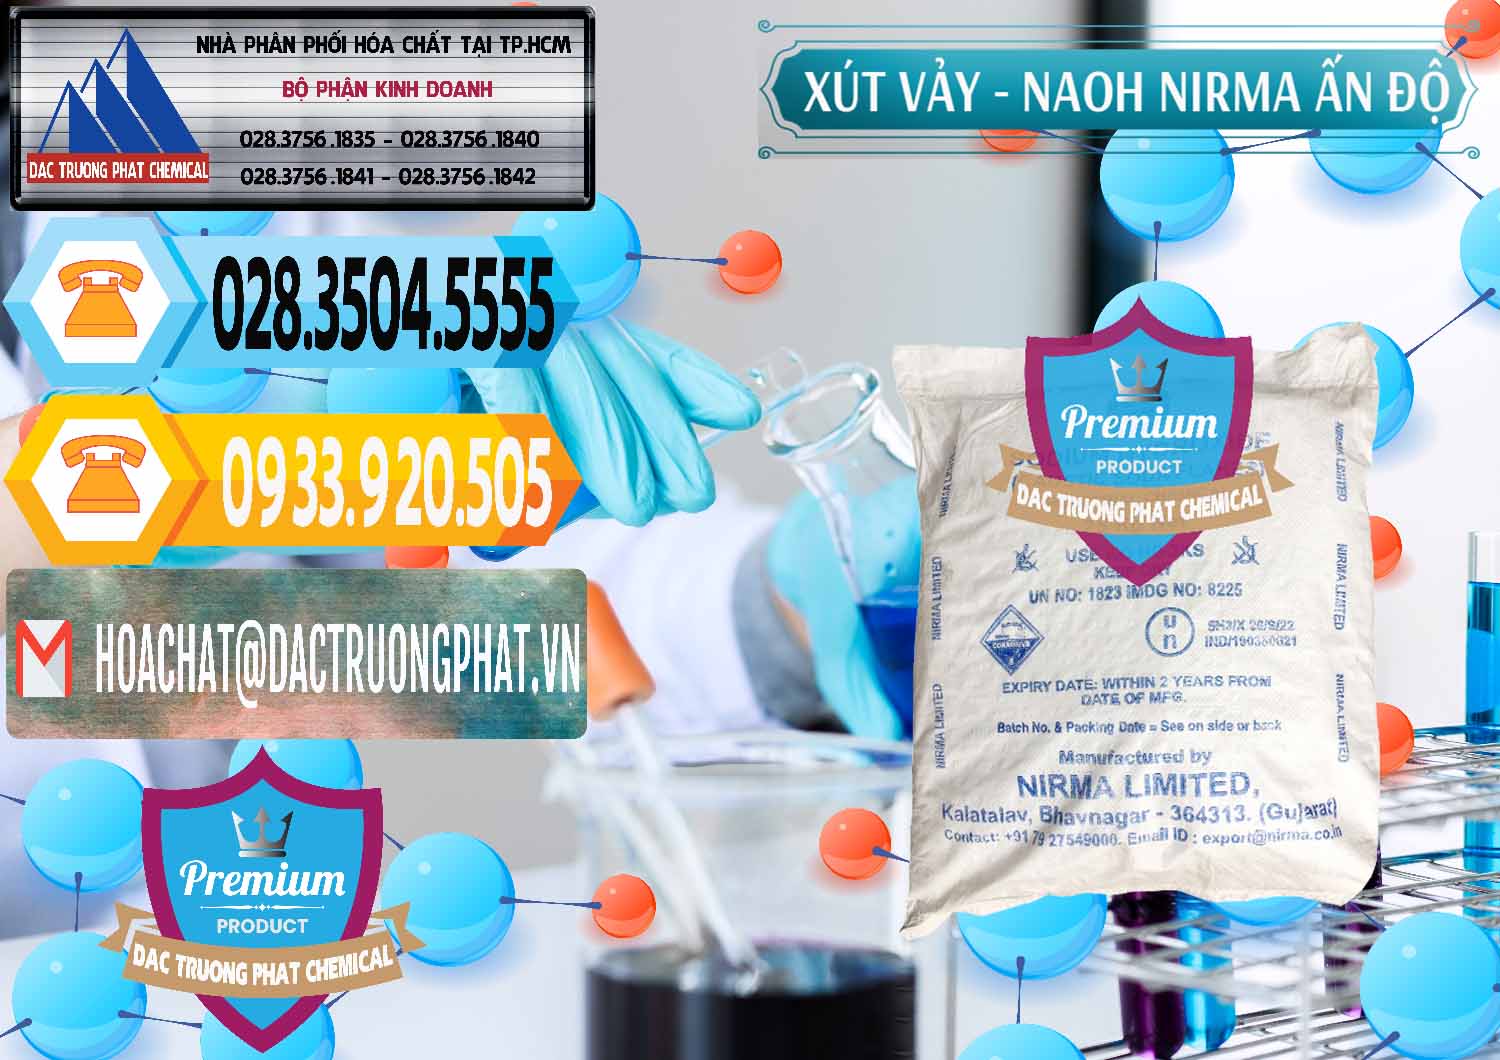 Nơi chuyên bán - phân phối Xút Vảy - NaOH Vảy Nirma Ấn Độ India - 0371 - Cty cung cấp _ nhập khẩu hóa chất tại TP.HCM - hoachattayrua.net